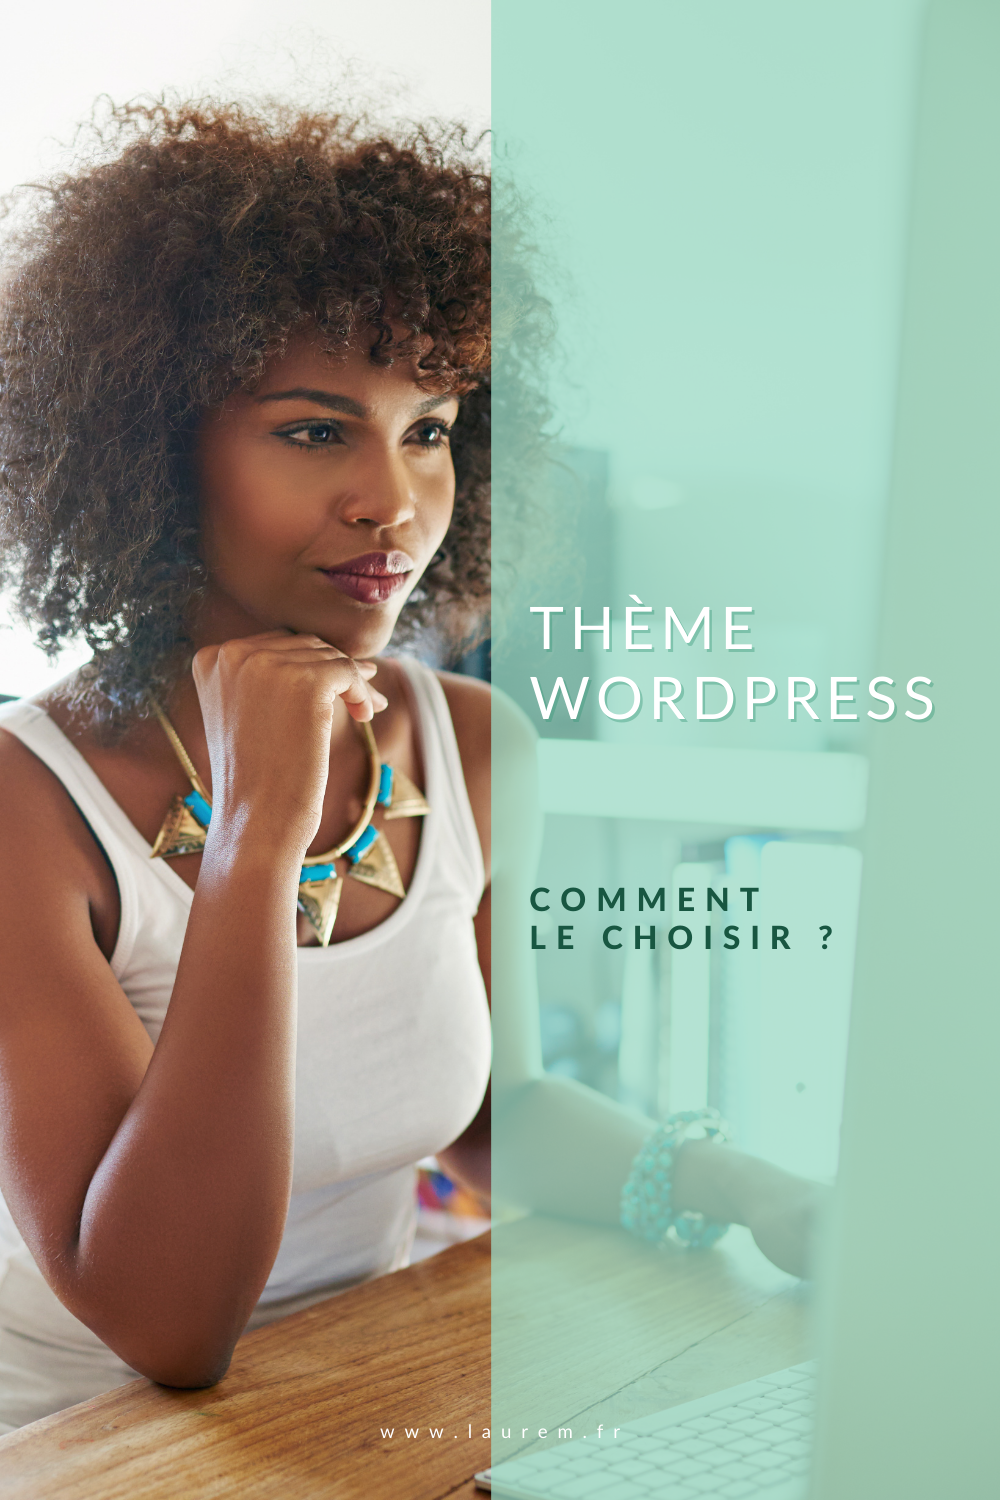 Choisir un thème WordPress peut vite devenir un casse-tête surtout lors du lancement de son 1er site. Voici ce que tu dois savoir avant de cliquer sur télécharger.